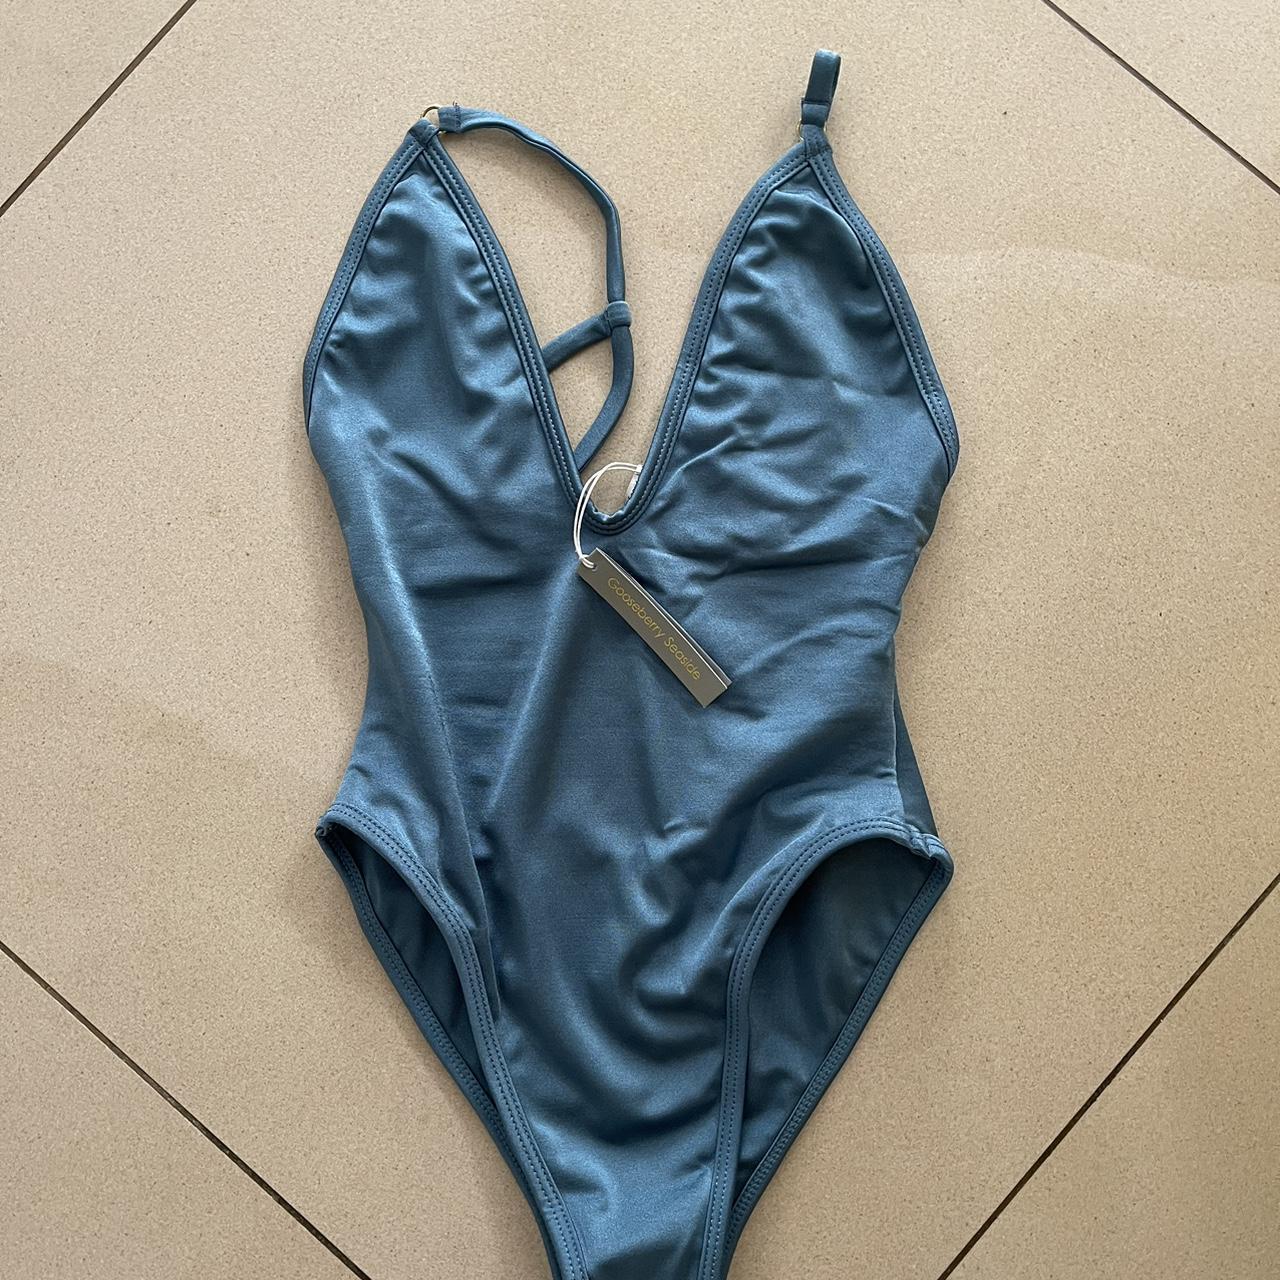 Gooseberry 1 piece bathing suit, color LAGOON size XS - Depop